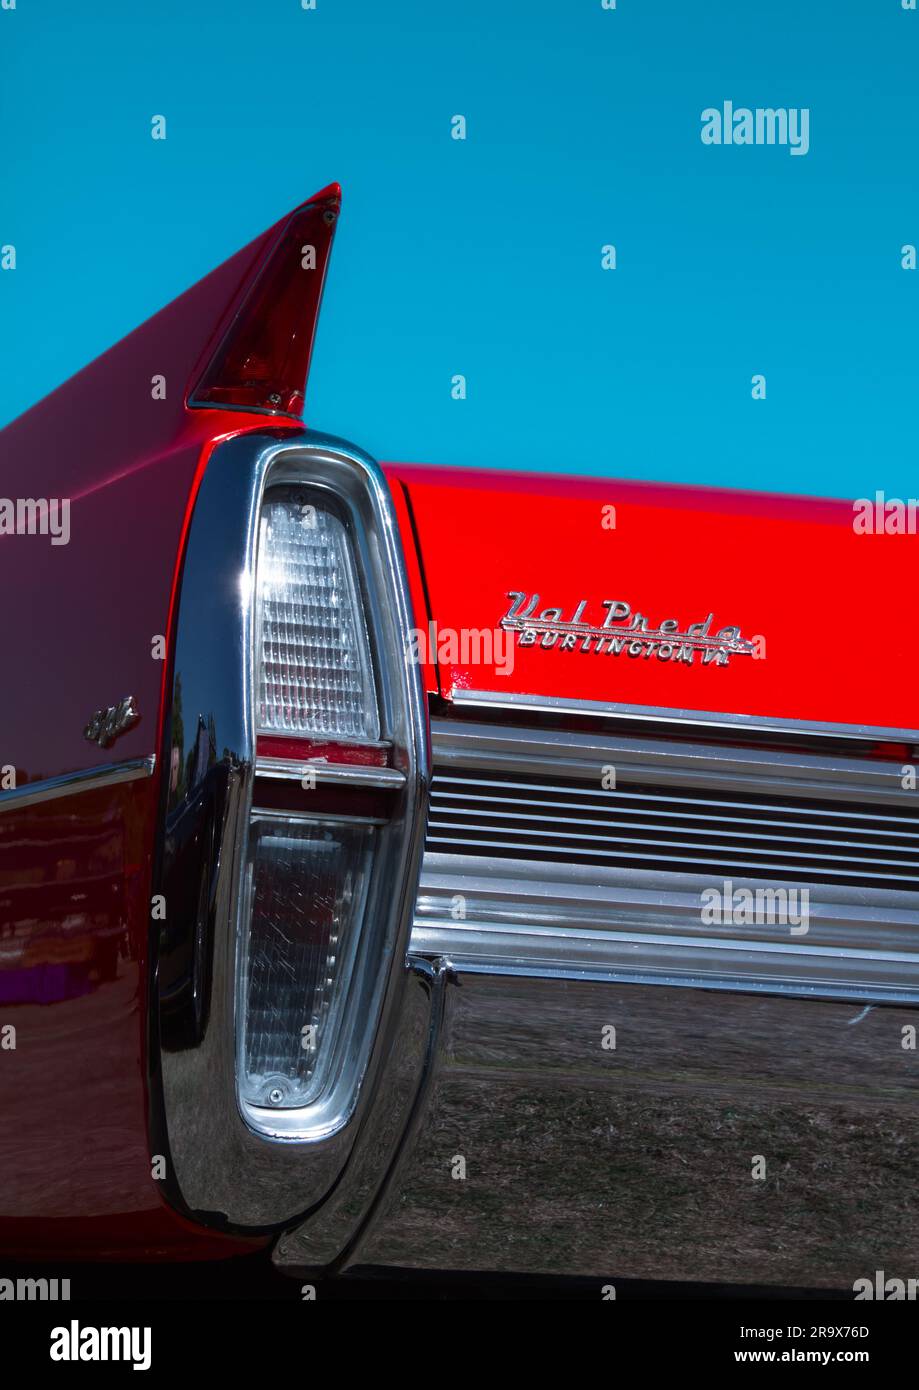 Luce posteriore, luce di coda e pinna di Un veicolo a motore rosso Val preda Cadillac Coupe DeVille degli anni '1960, Lymington, Regno Unito Foto Stock